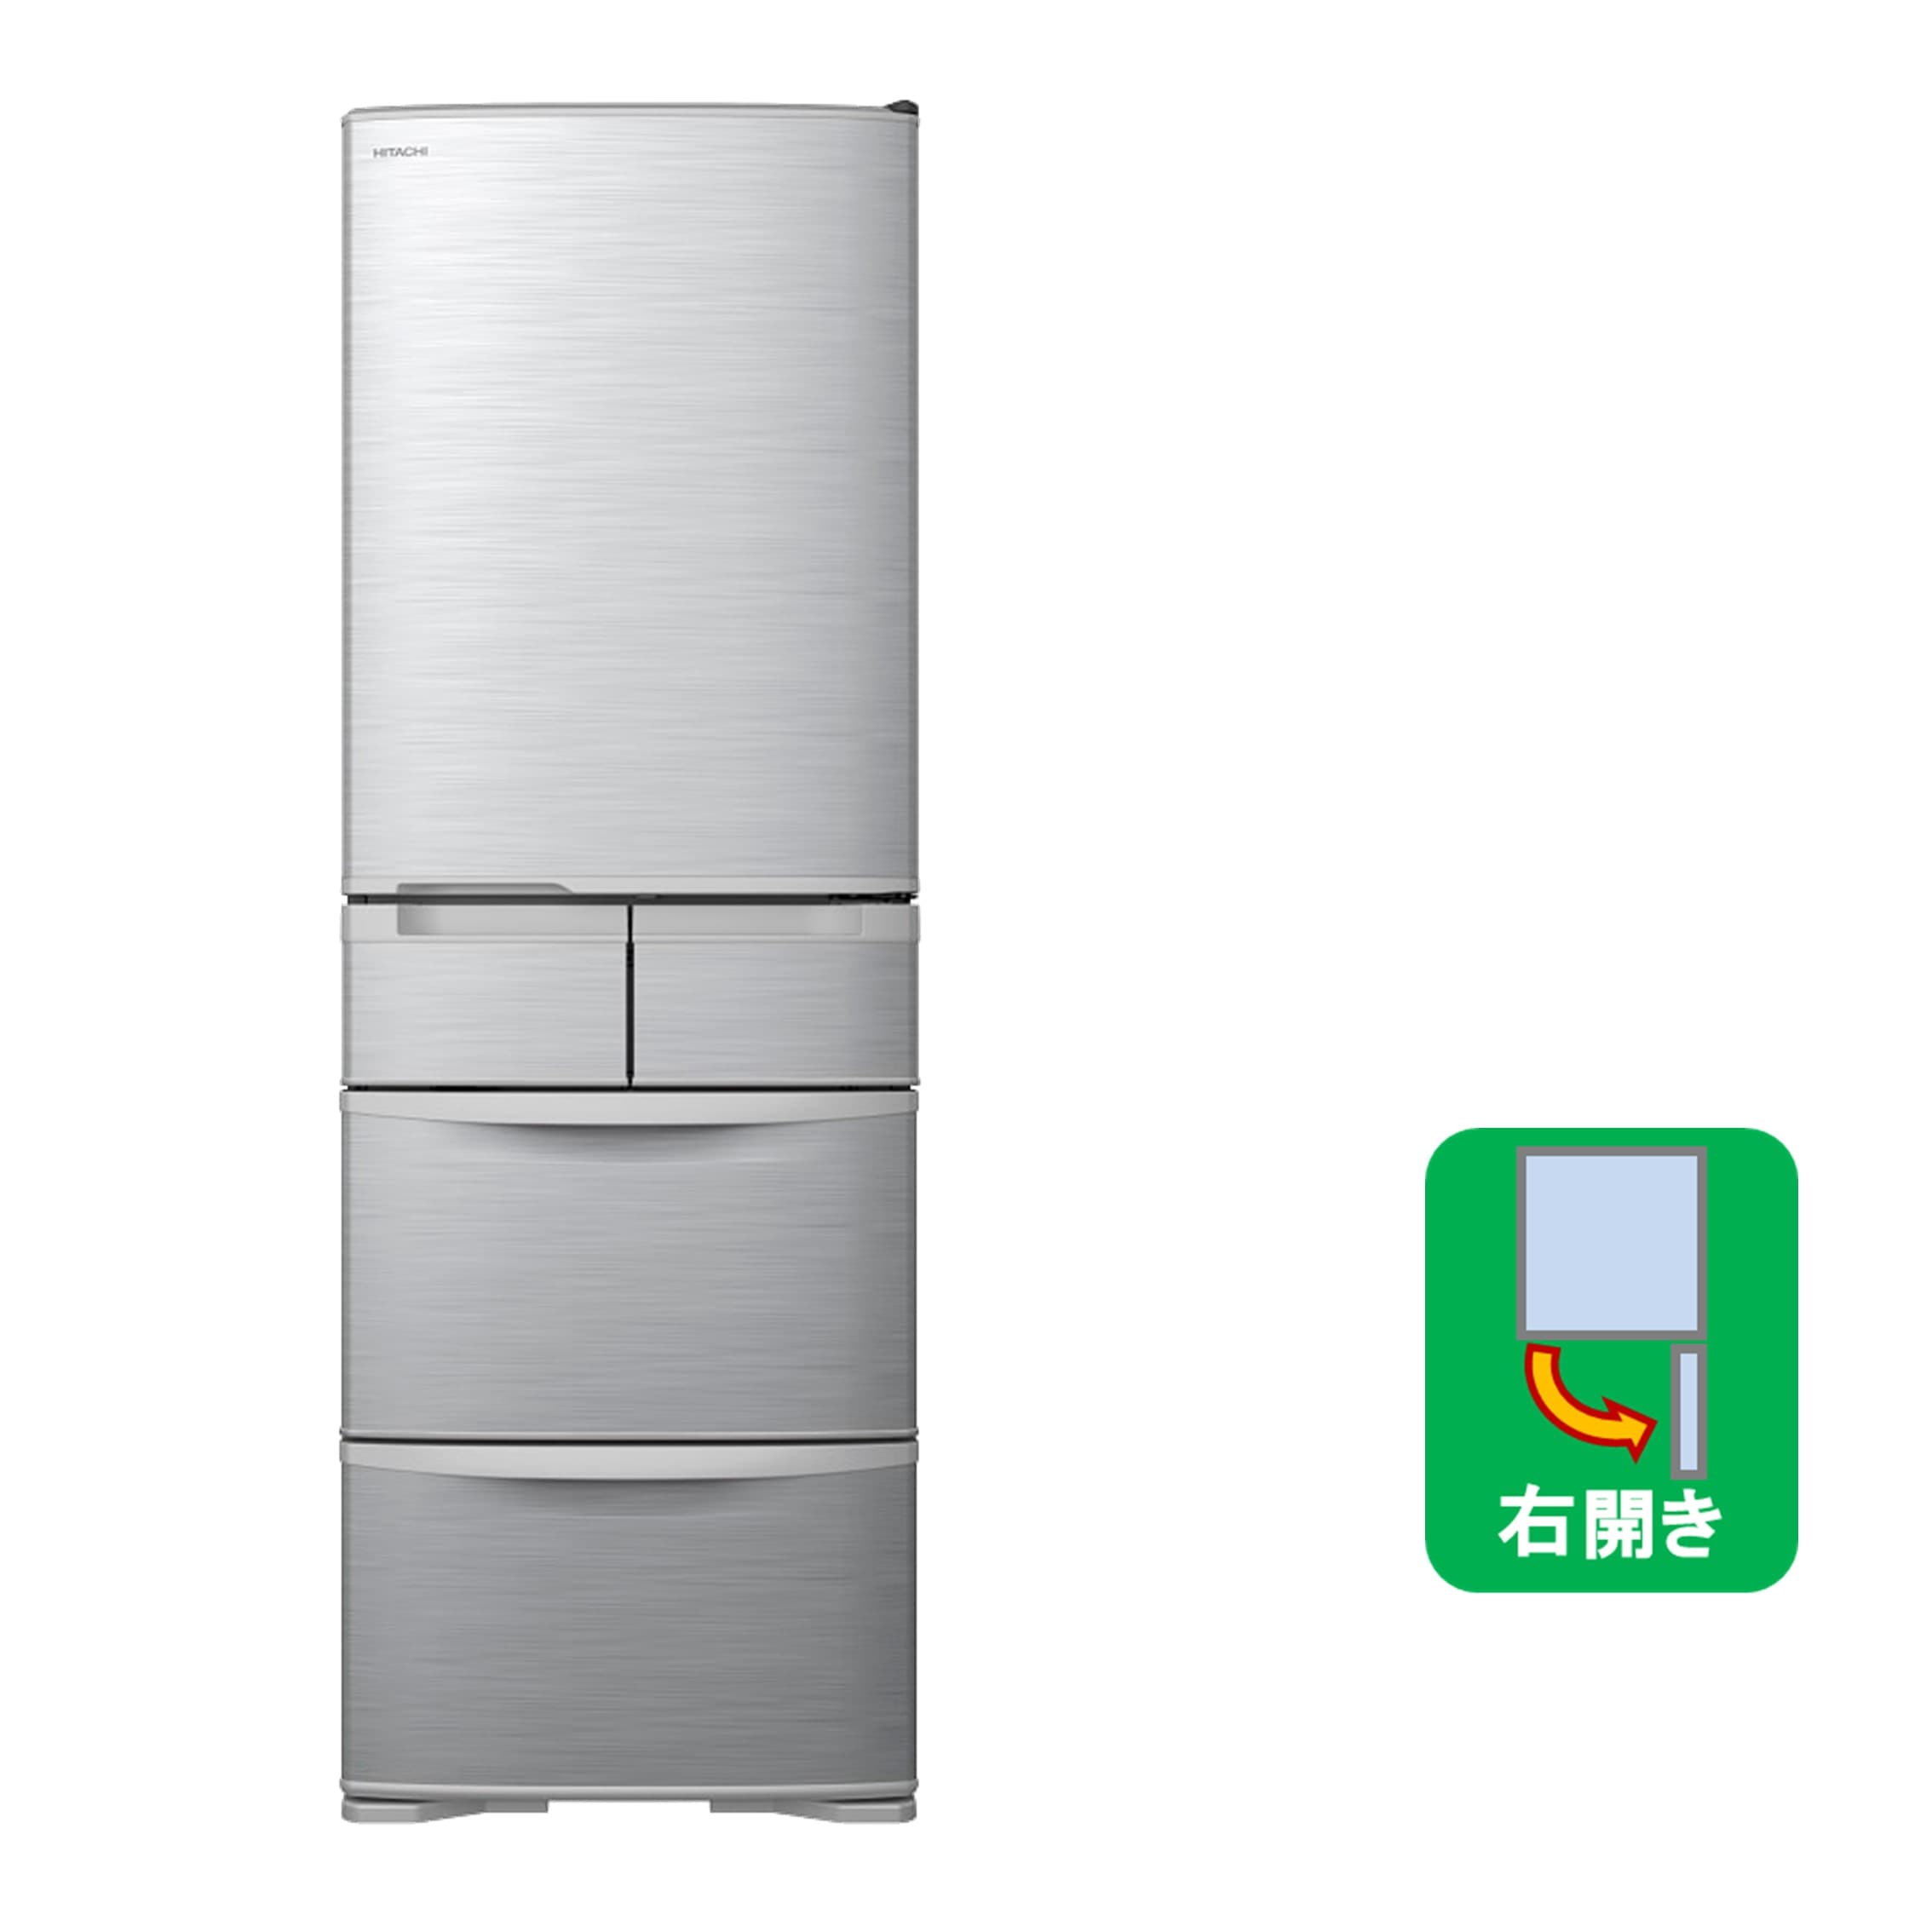 お値下げ致しました！！】HITACHI 517L冷蔵庫 RX5200E 2014年製 日立 